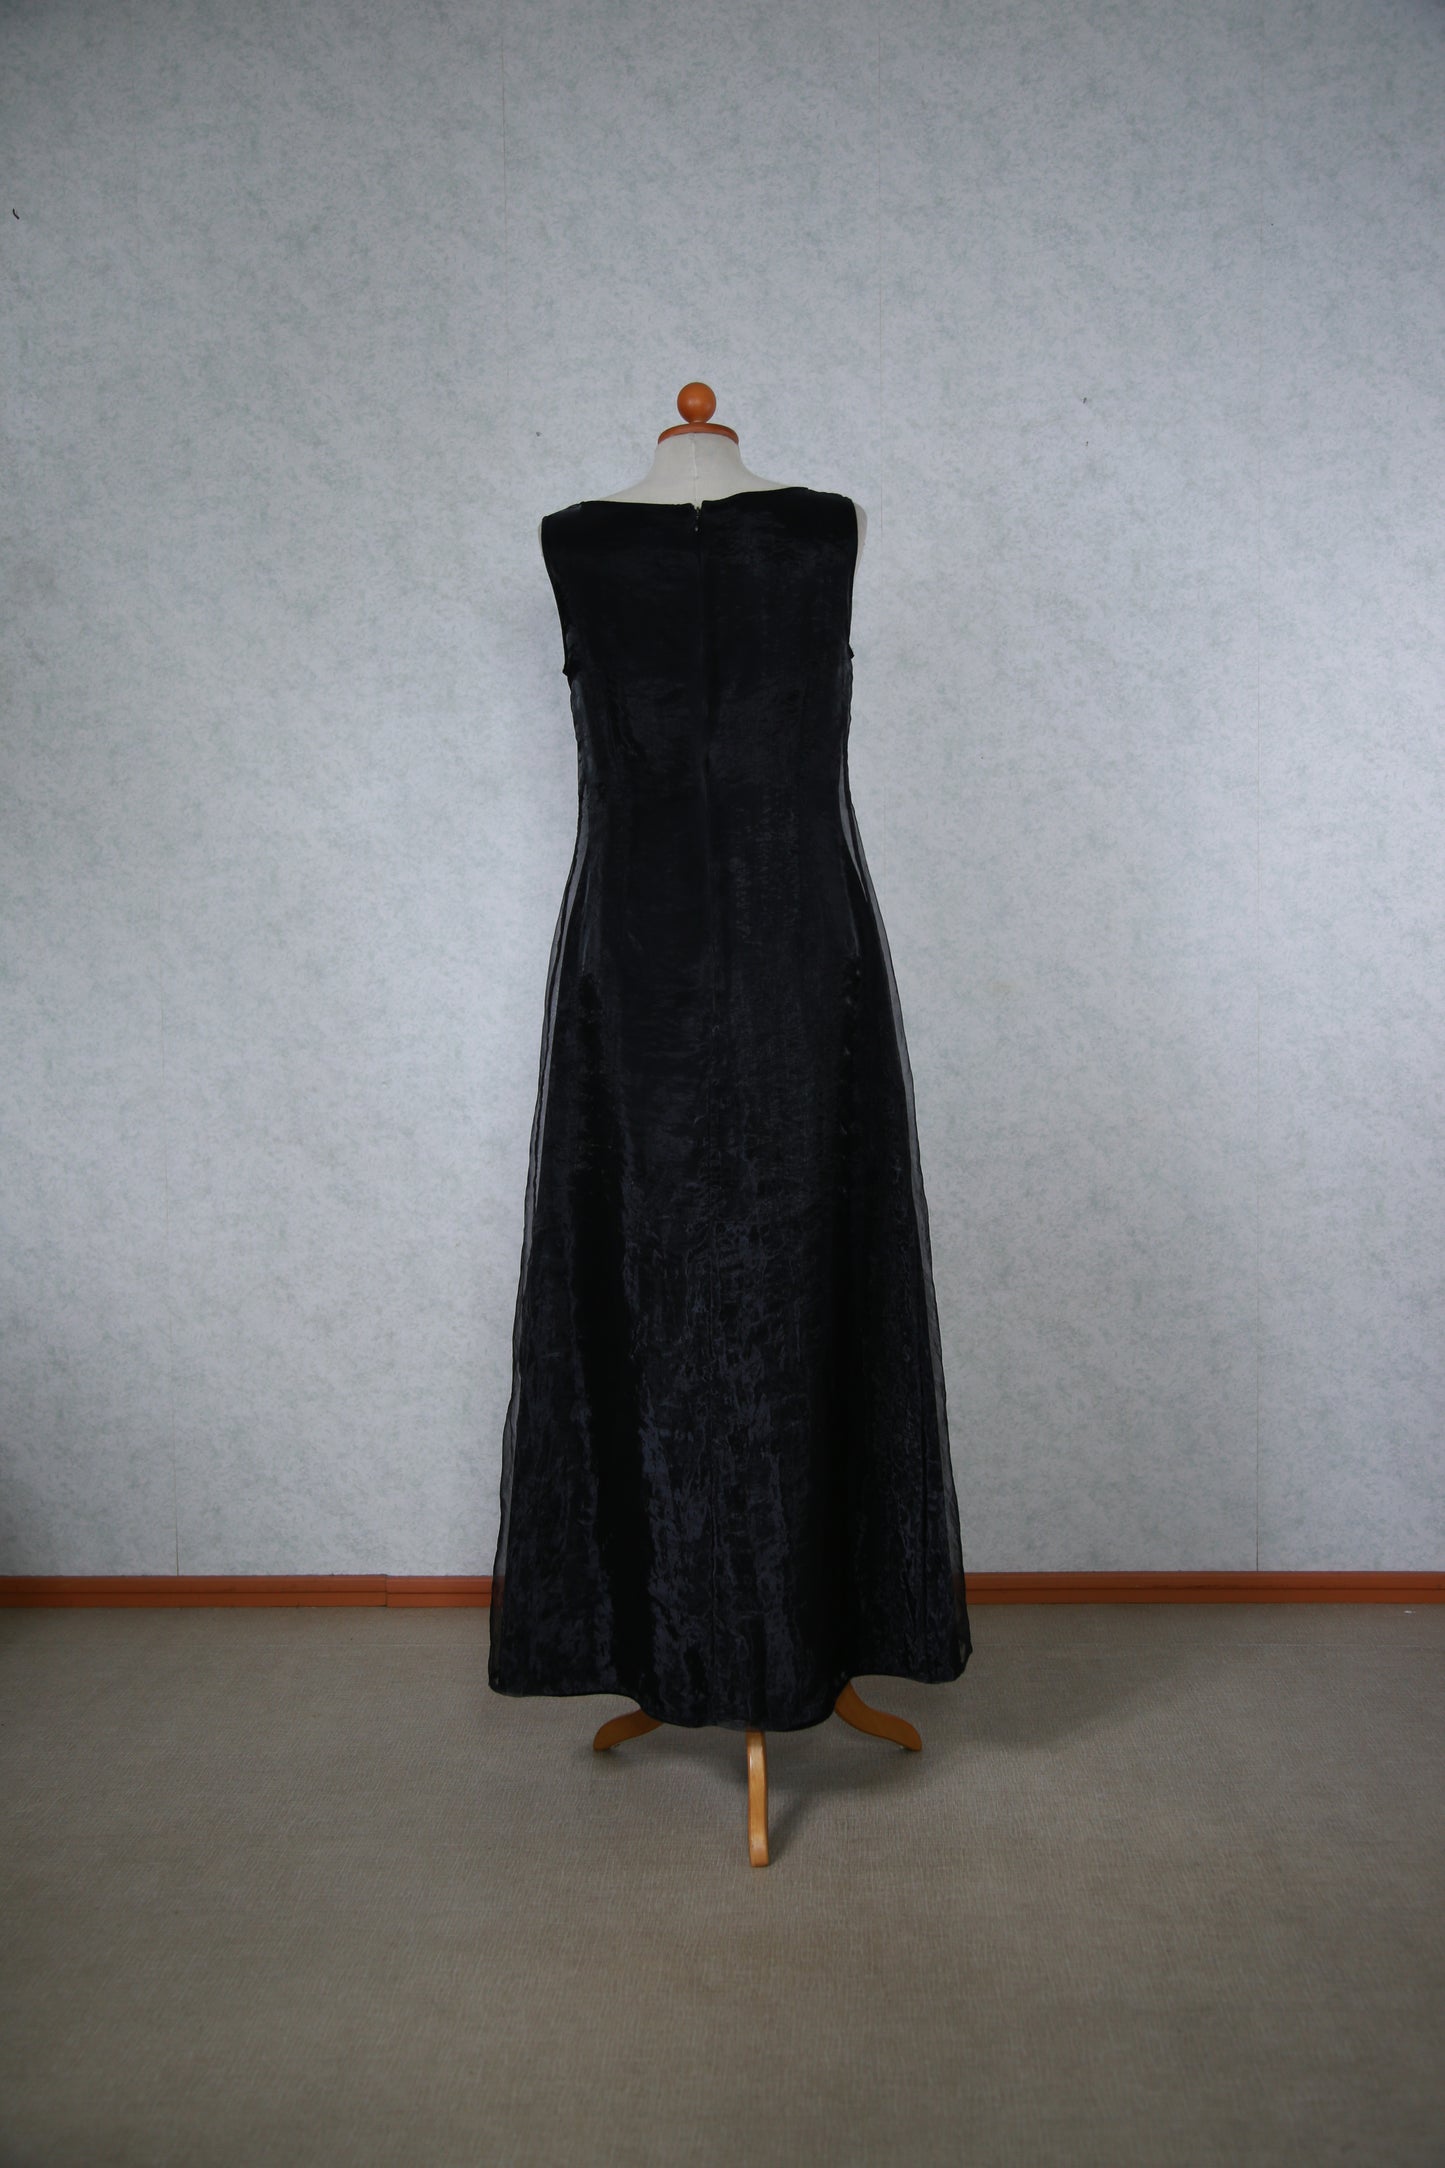 Musta pitkä kiiltelevä mekko